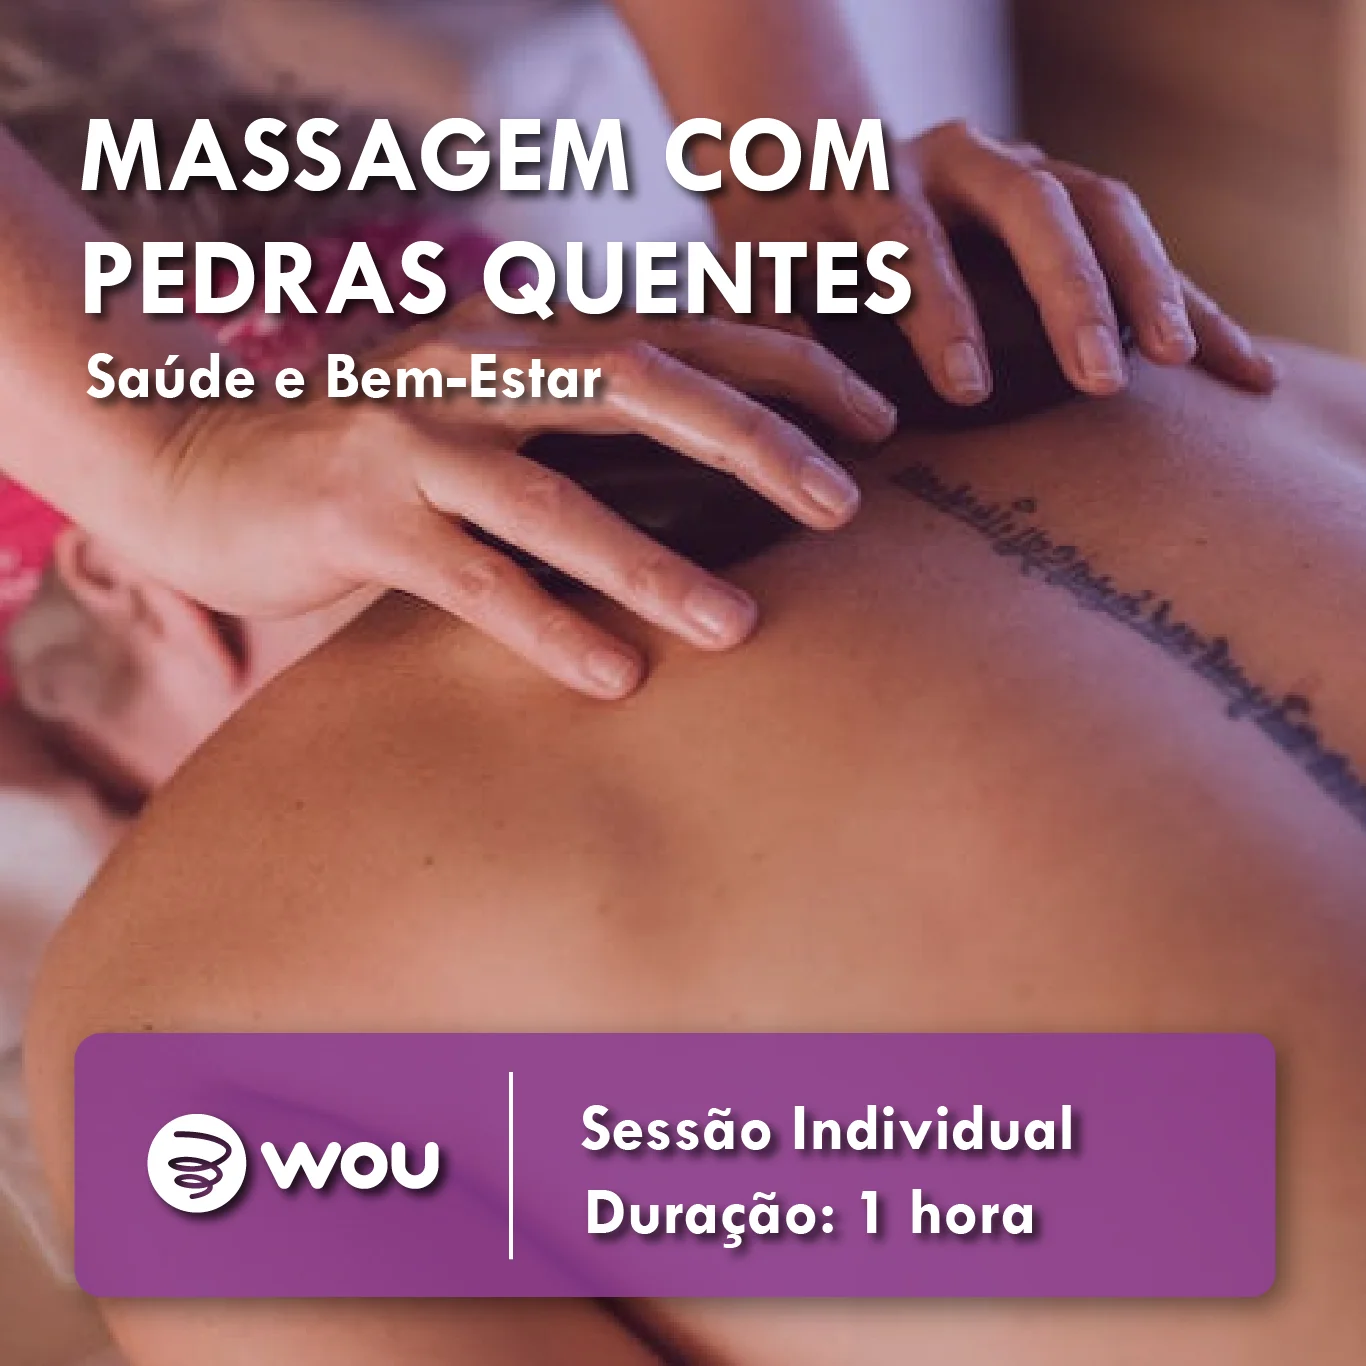 Hot Stone Massage in Aveiro